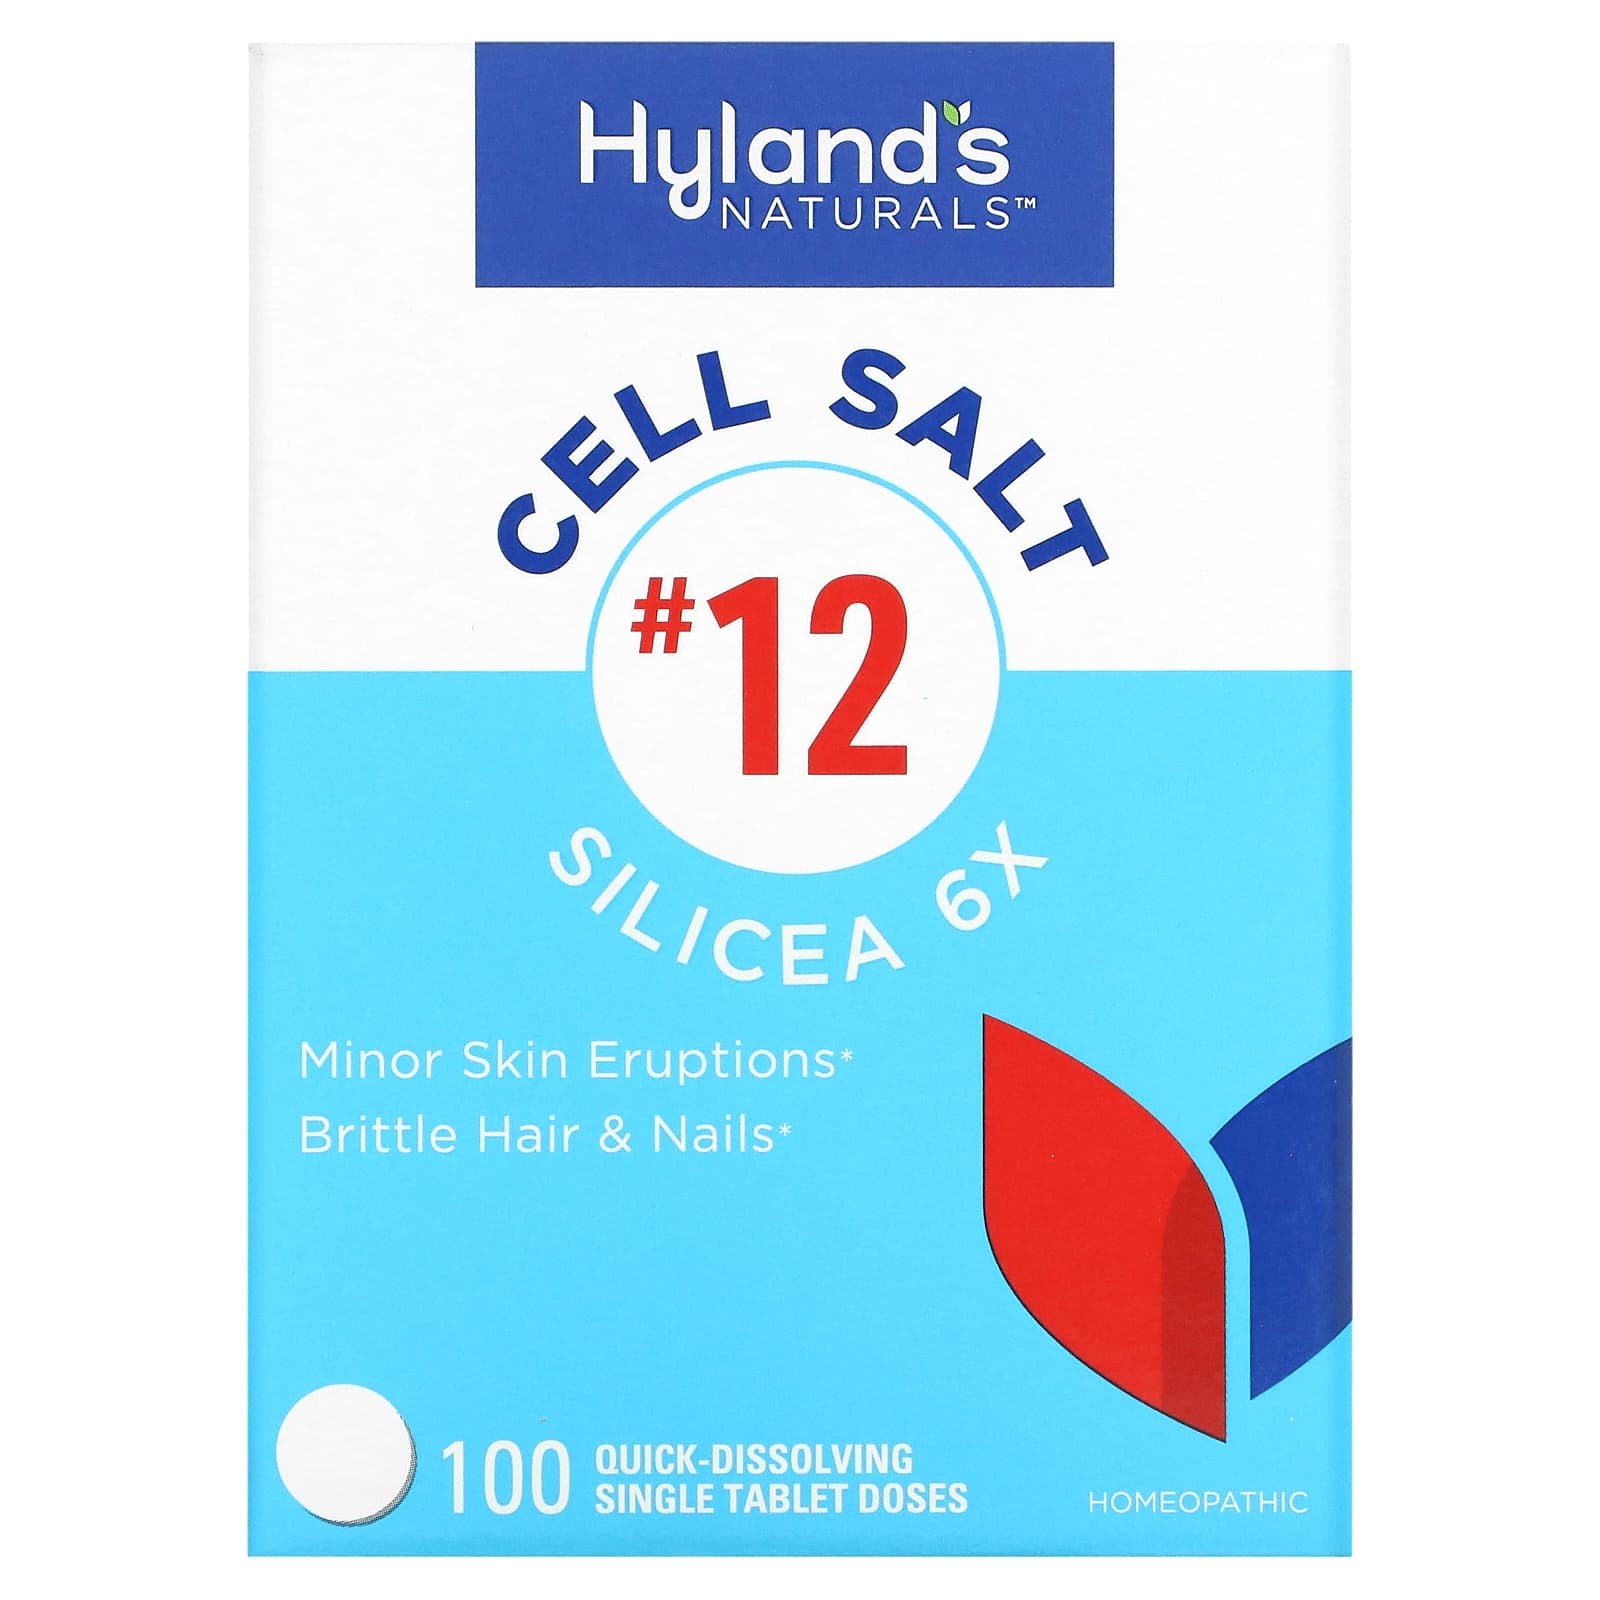 Клеточная Соль №12 / Силицея 6X Hyland's, 100 быстрорастворимых таблеток hyland s клеточная соль 2 калькарея фосфорика calc phos 6x 100 отдельных быстрорастворимых таблеток